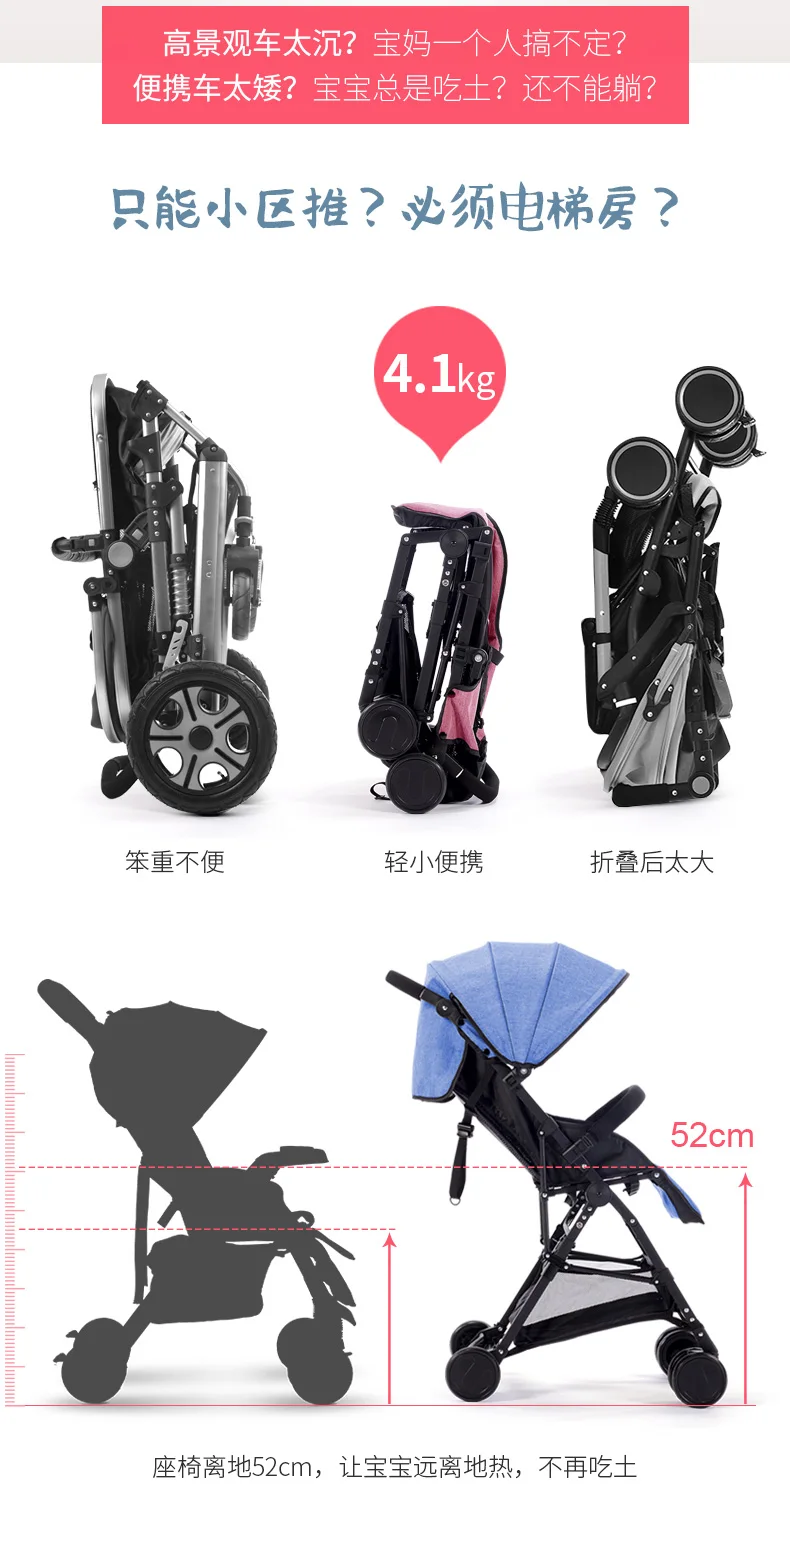 Светильник для детской коляски, портативный, складной, может сидеть и откидываться, ультра-светильник, складной амортизатор, зонт для автомобиля, портативный, для путешествий